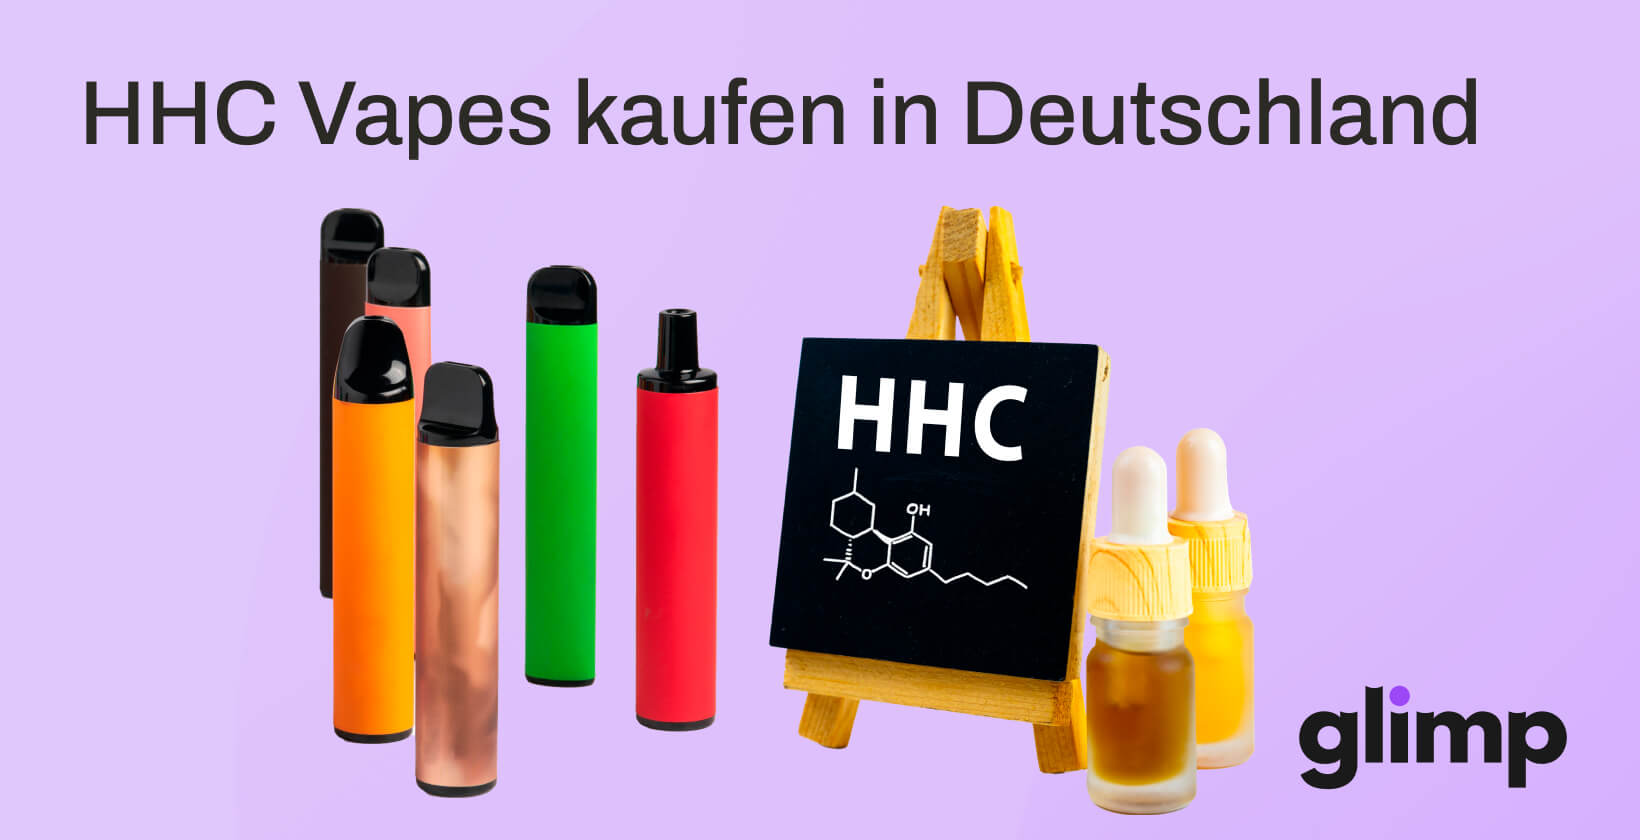 HHC Vapes kaufen in Deutschland: Legal oder nicht?